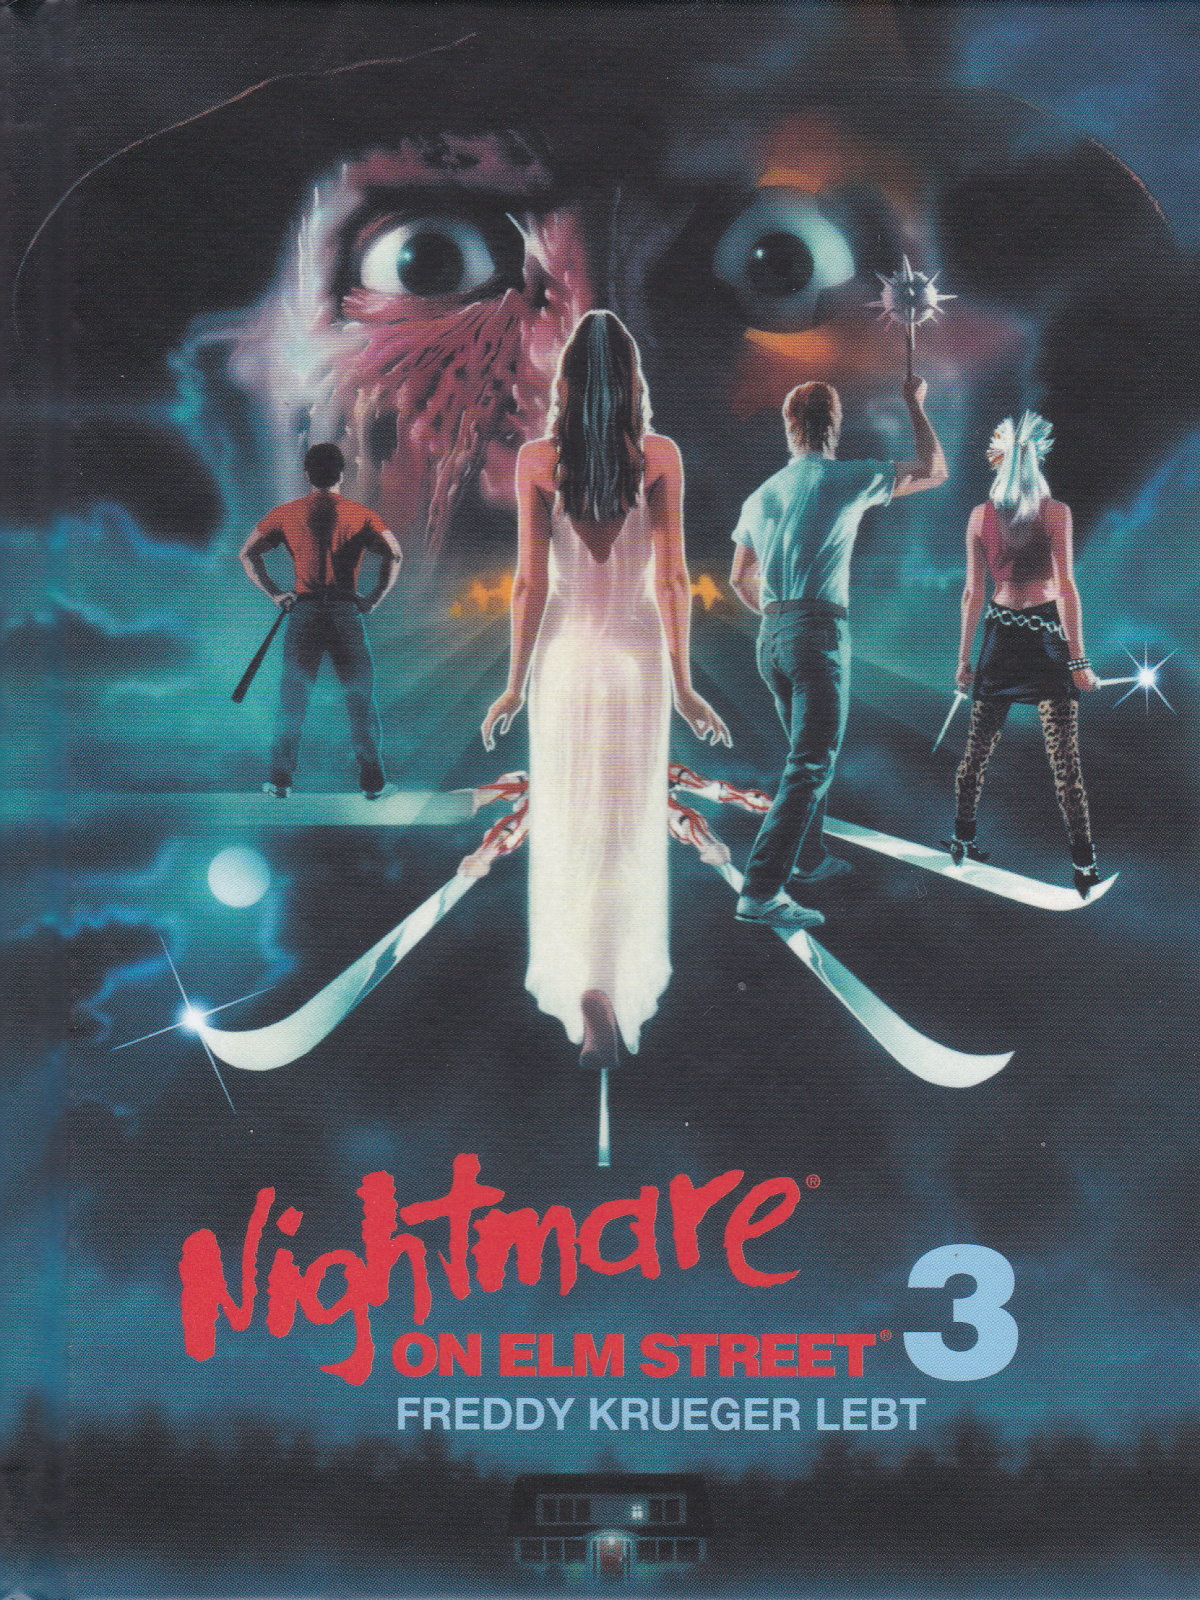 Cover - Nightmare 3 - Freddy Krueger lebt.jpg